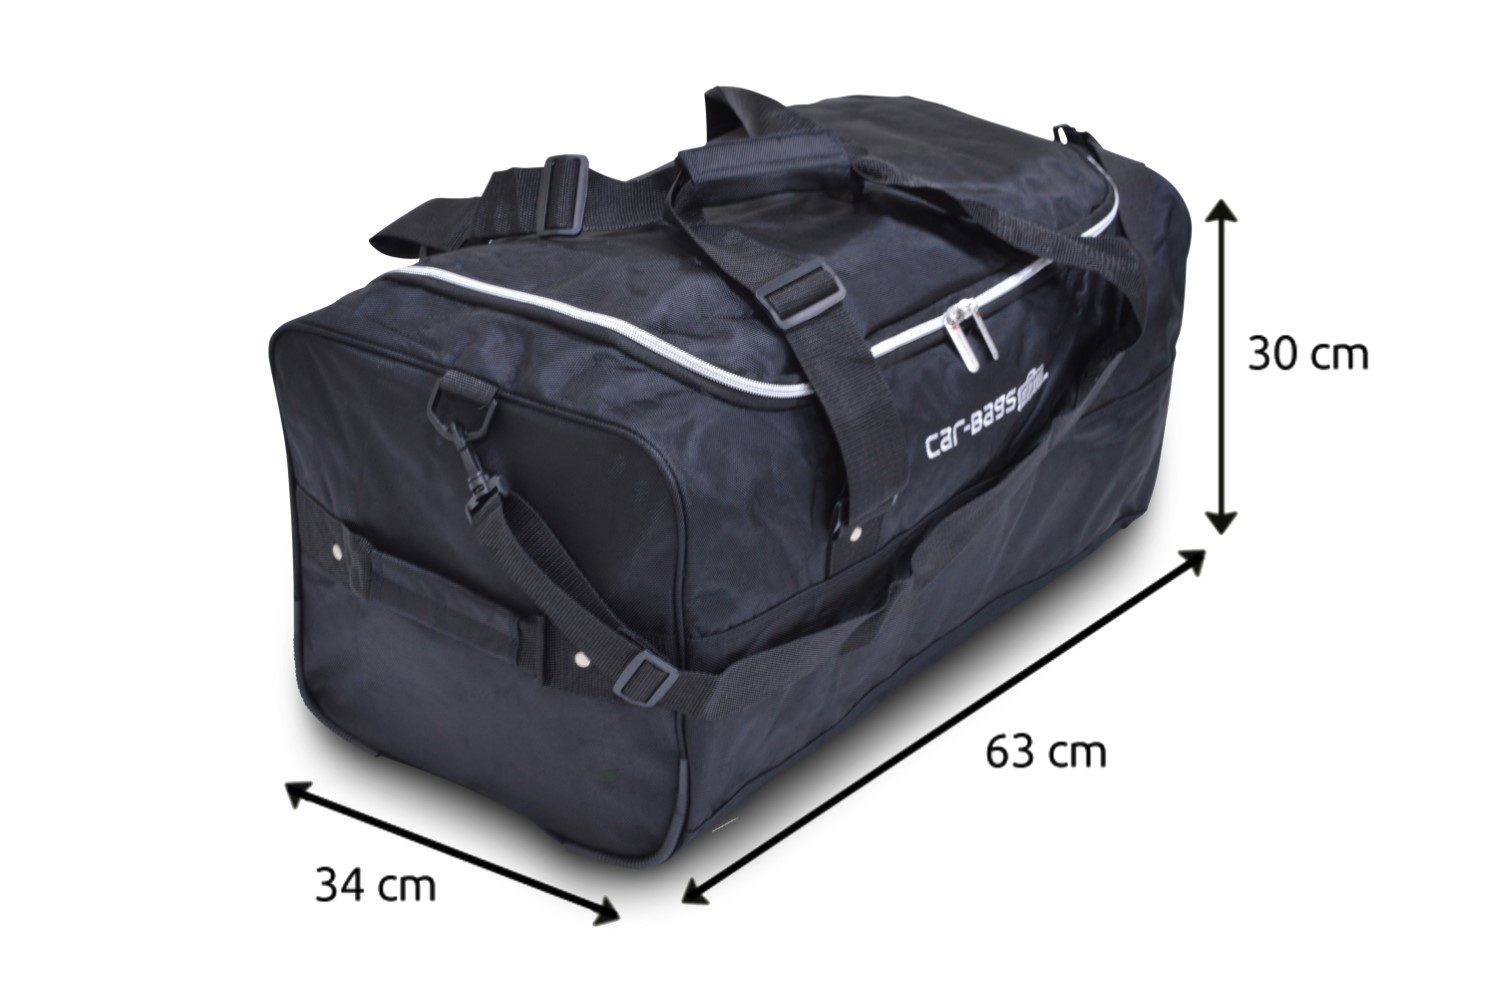 CAR-BAGS Roof Box Bag